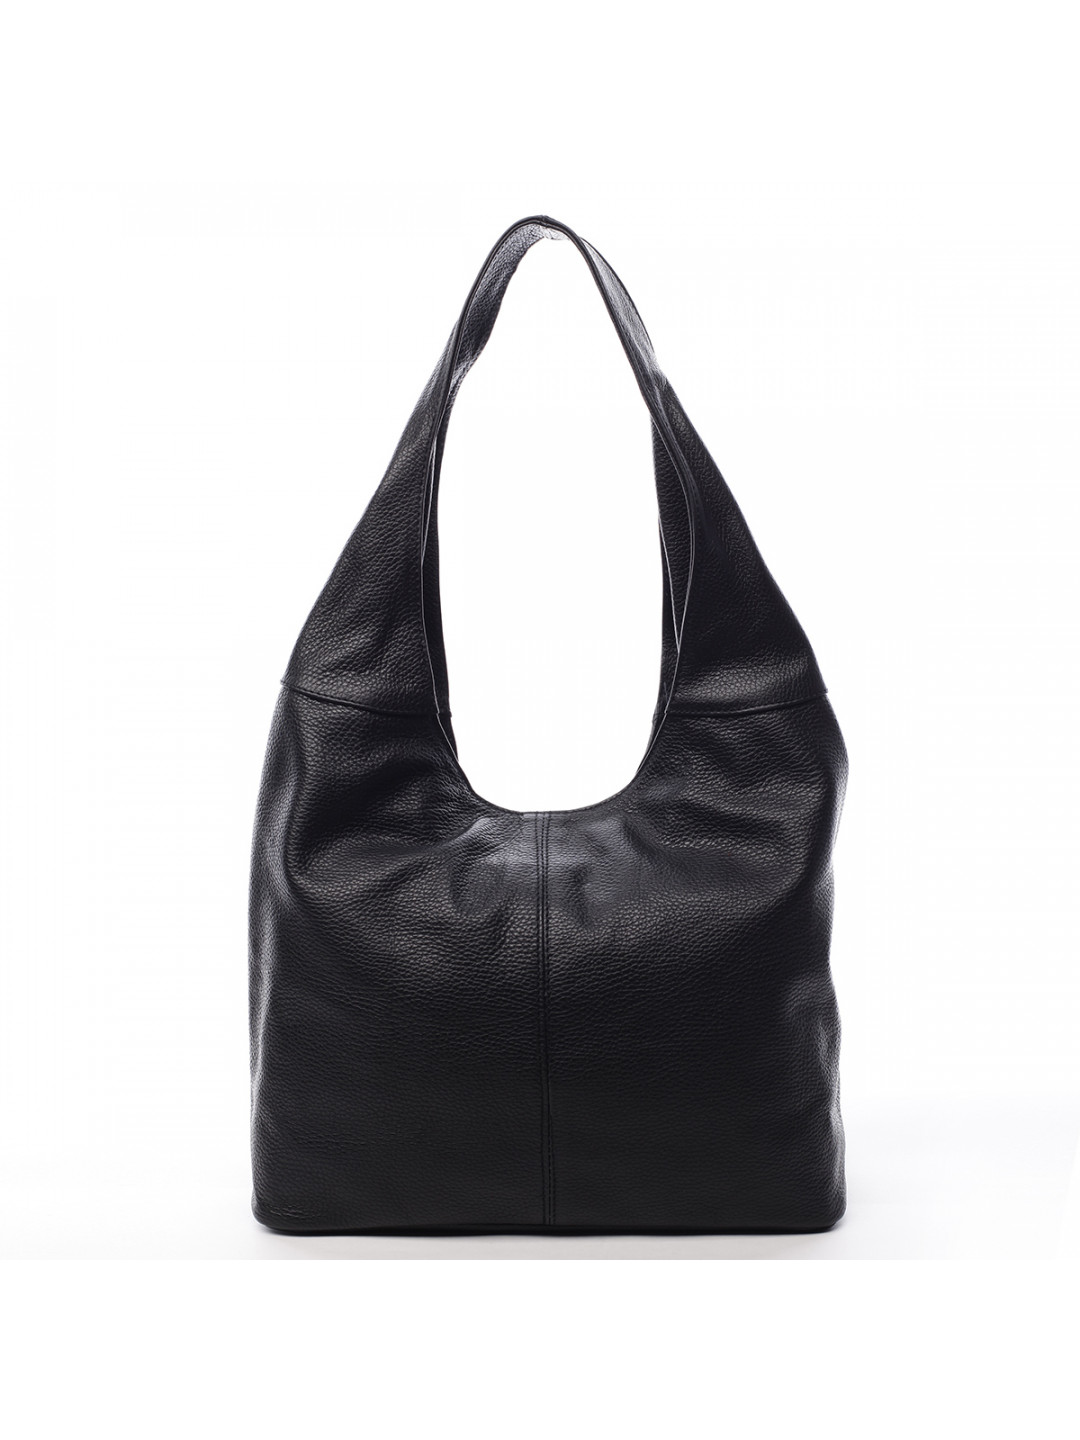 Velká dámská kožená kabelka Hayley černá